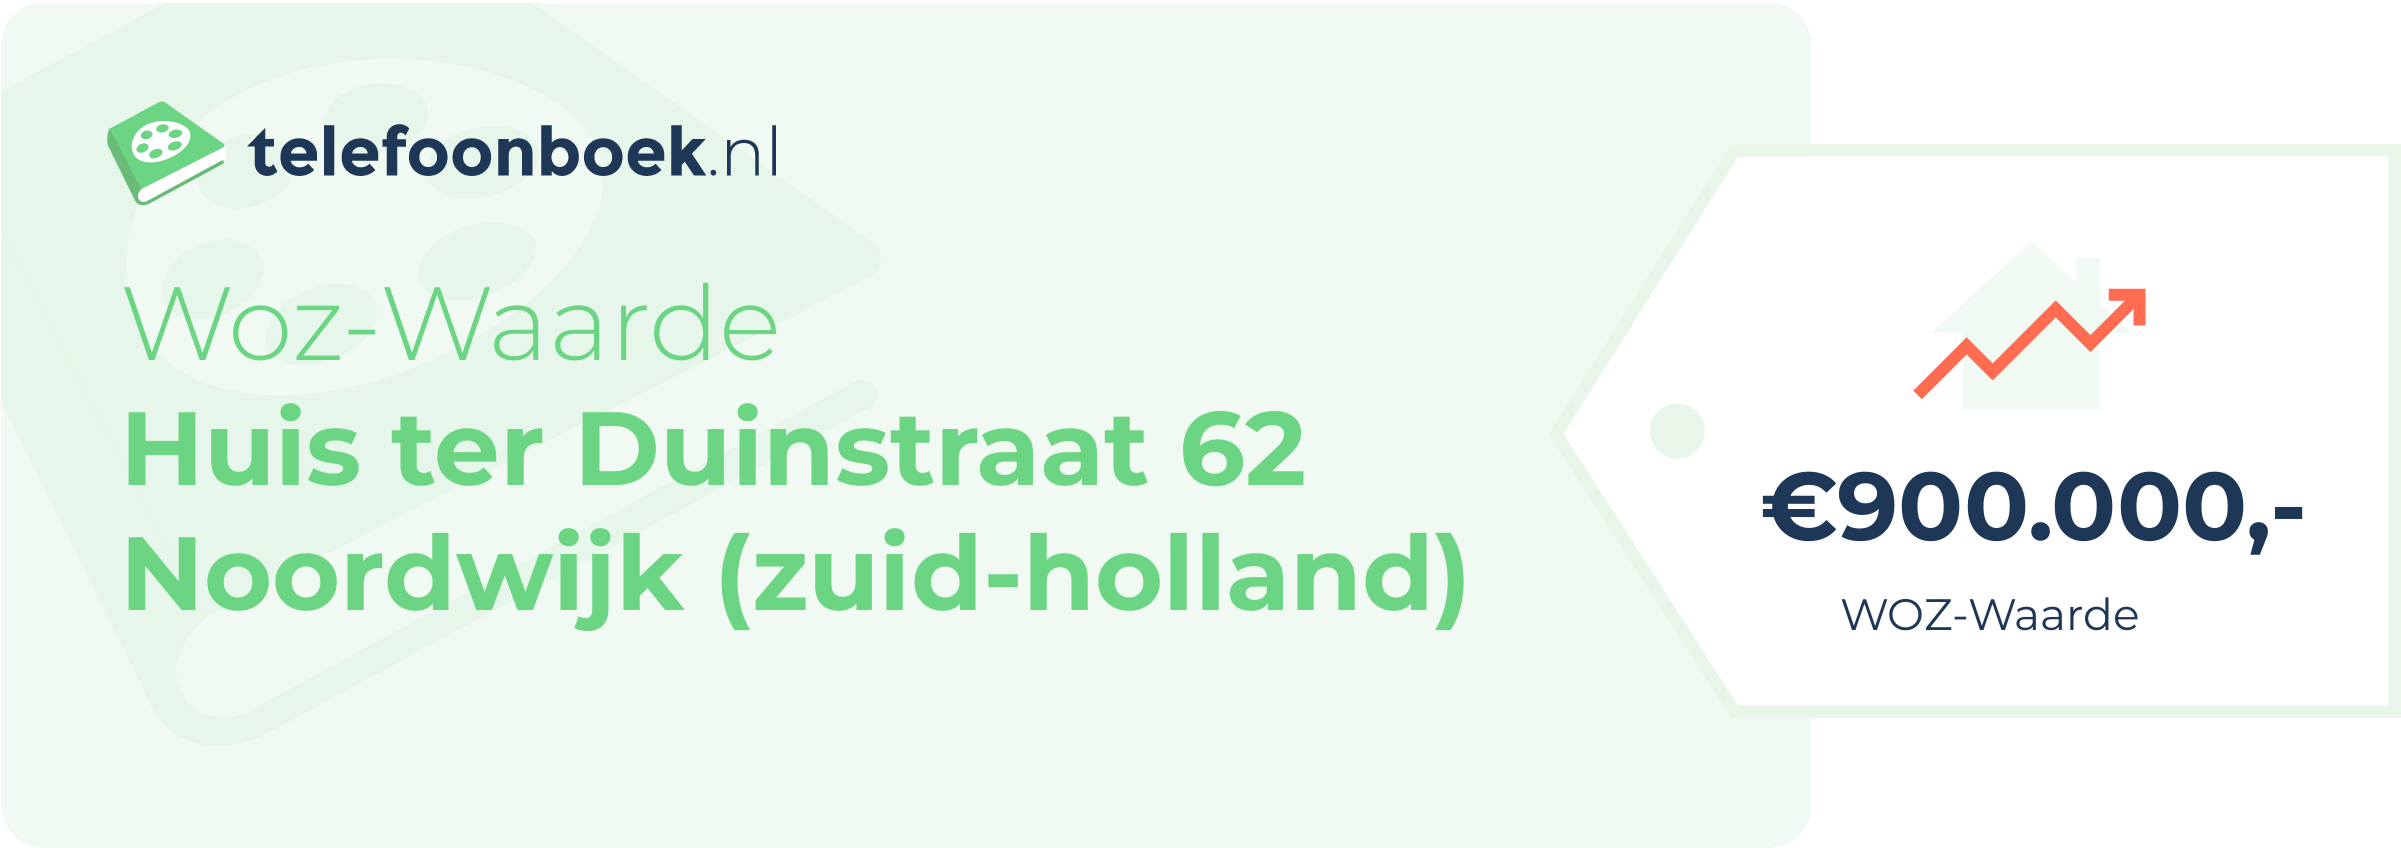 WOZ-waarde Huis Ter Duinstraat 62 Noordwijk (Zuid-Holland)